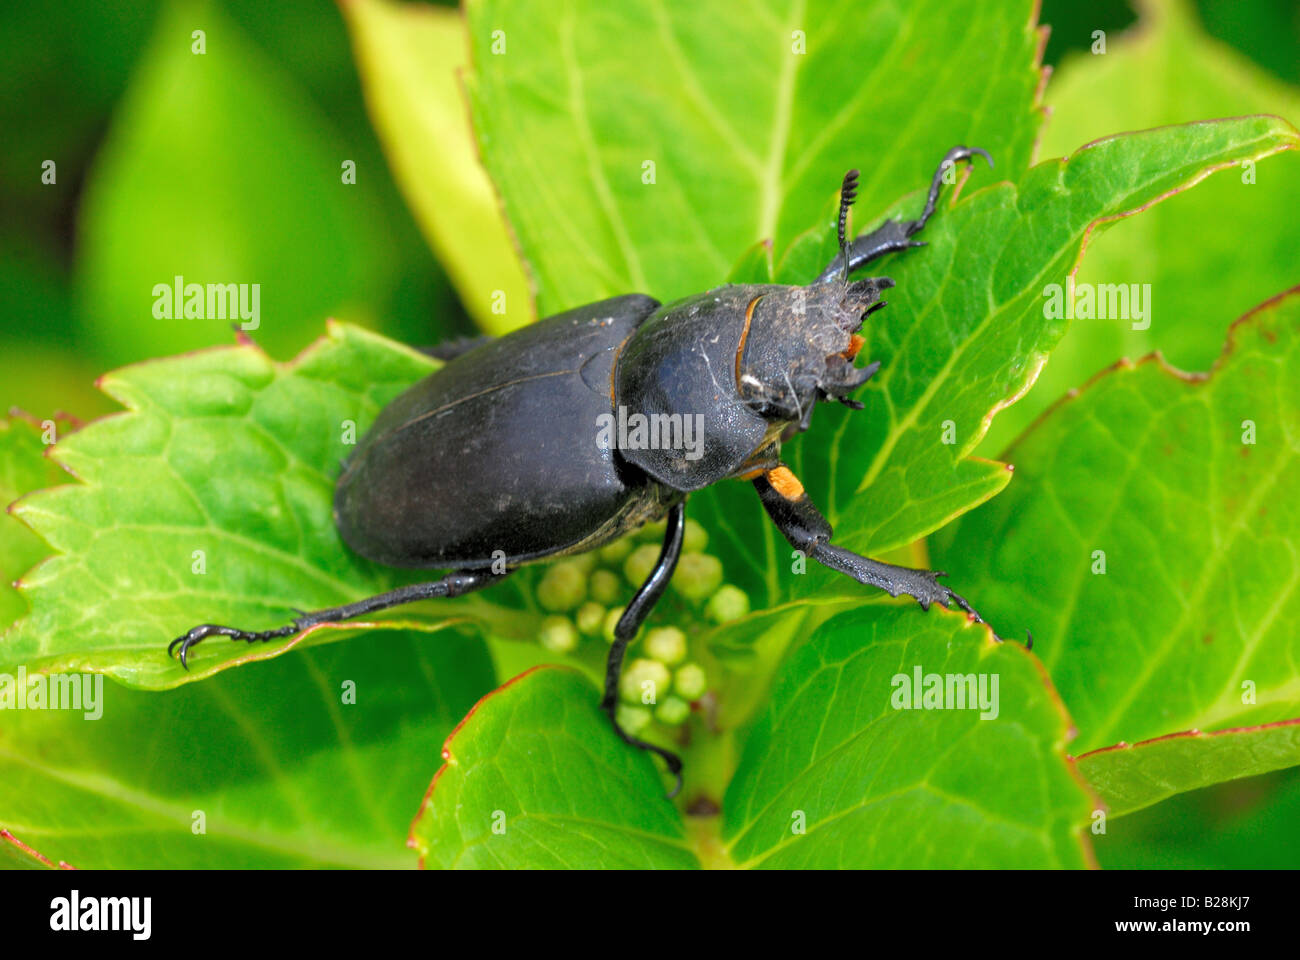 Stag beetle on leaf Banque D'Images